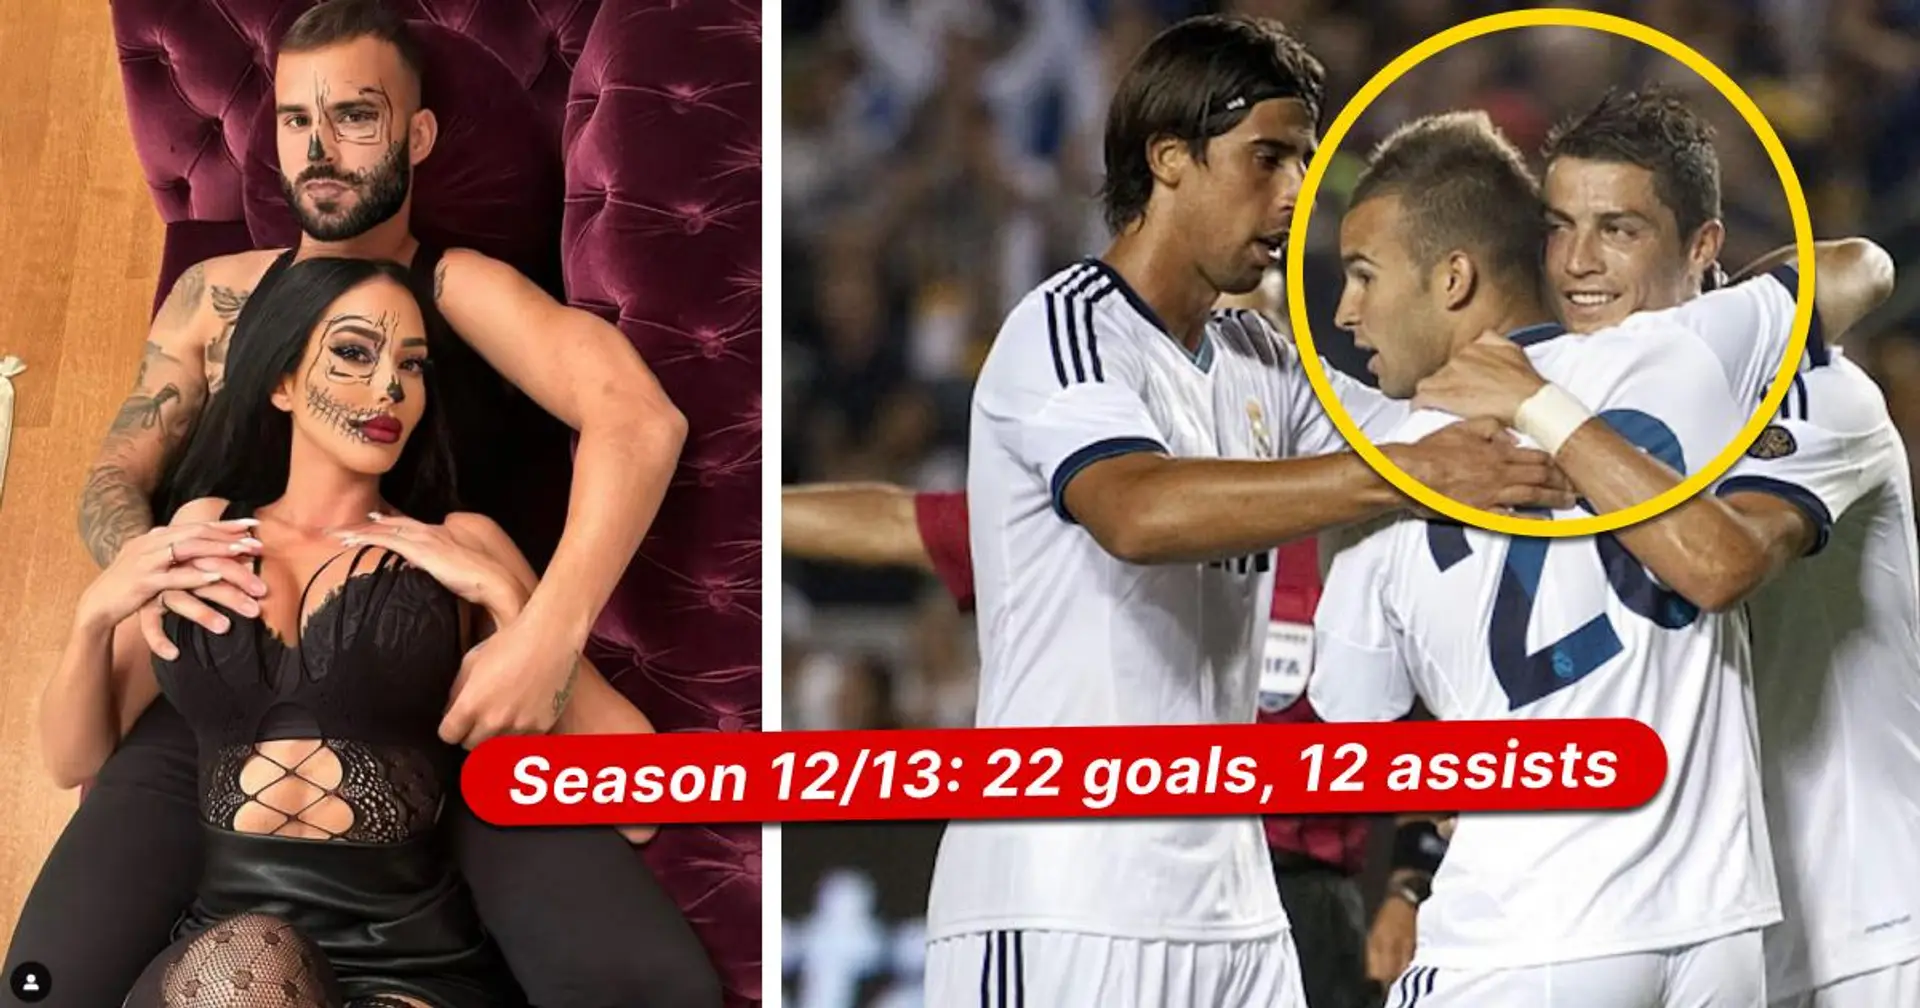 ¿Qué pasó con el próximo Cristiano del Real Madrid que supuestamente fue atropellado por su novia? Contestado